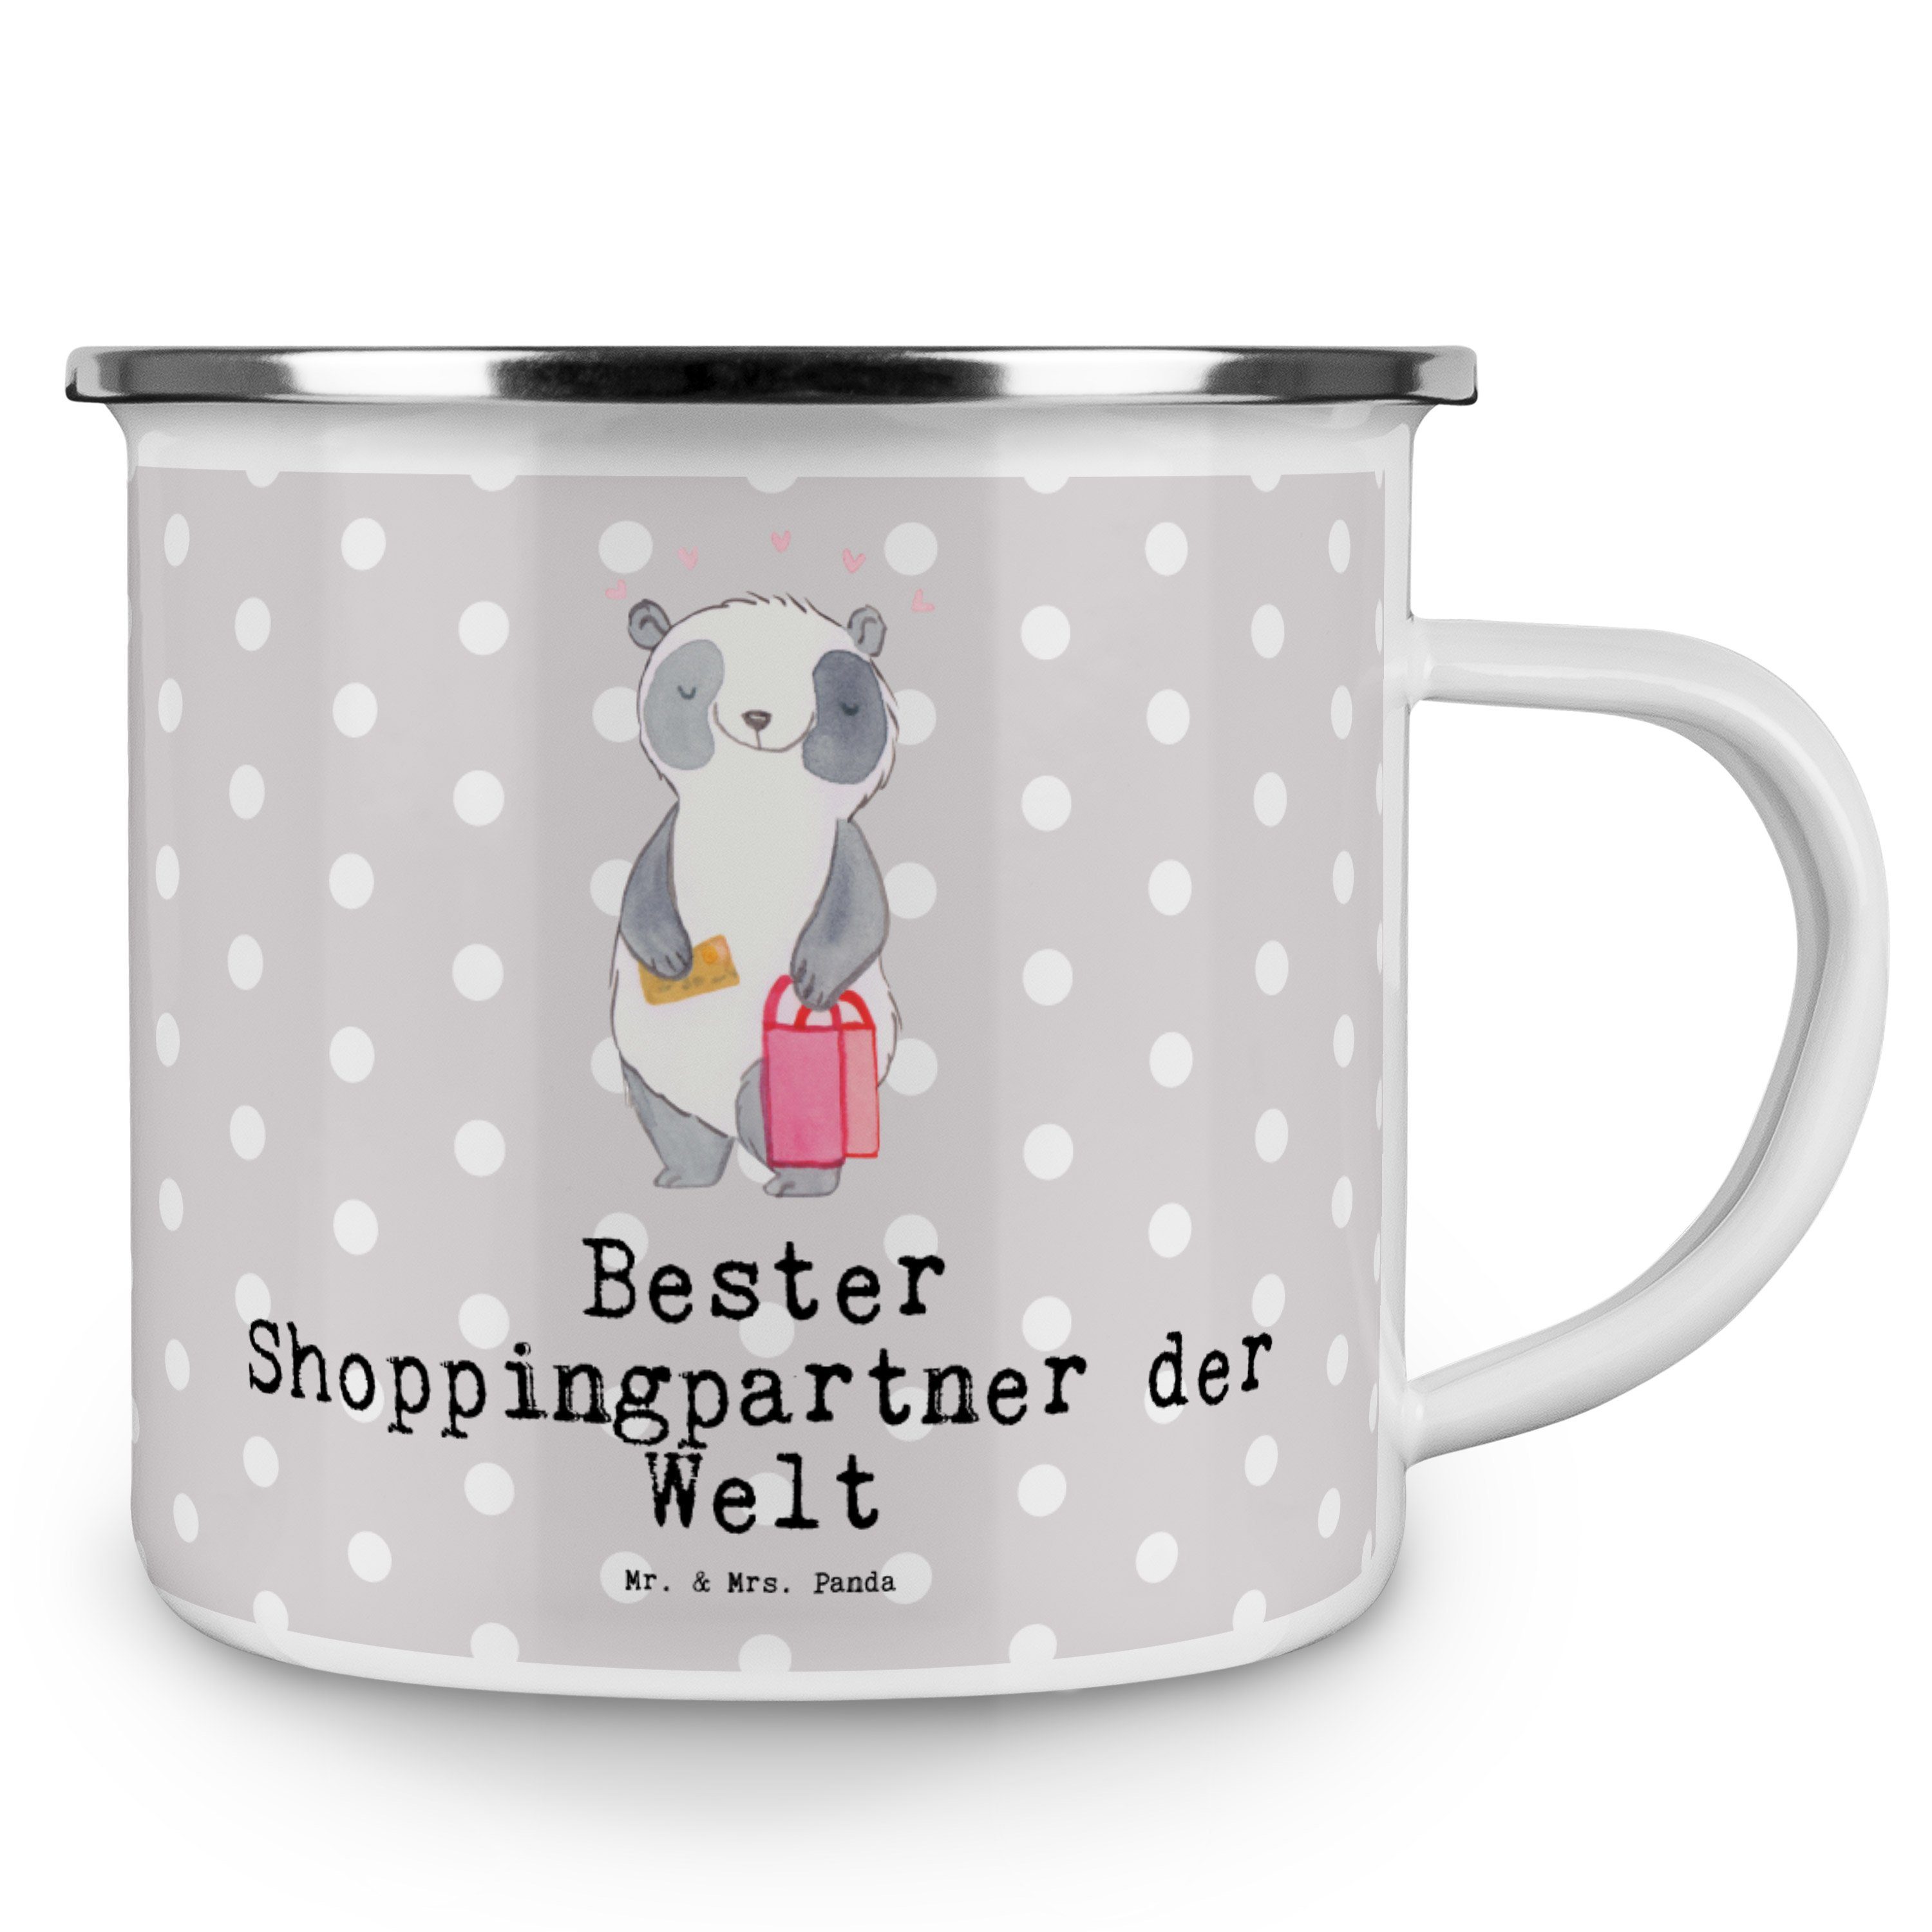 Mr. & Mrs. Panda Emaille Shoppingpartner Bester Grau Pastell Welt - Geschenk, der Panda - Quee, Becher